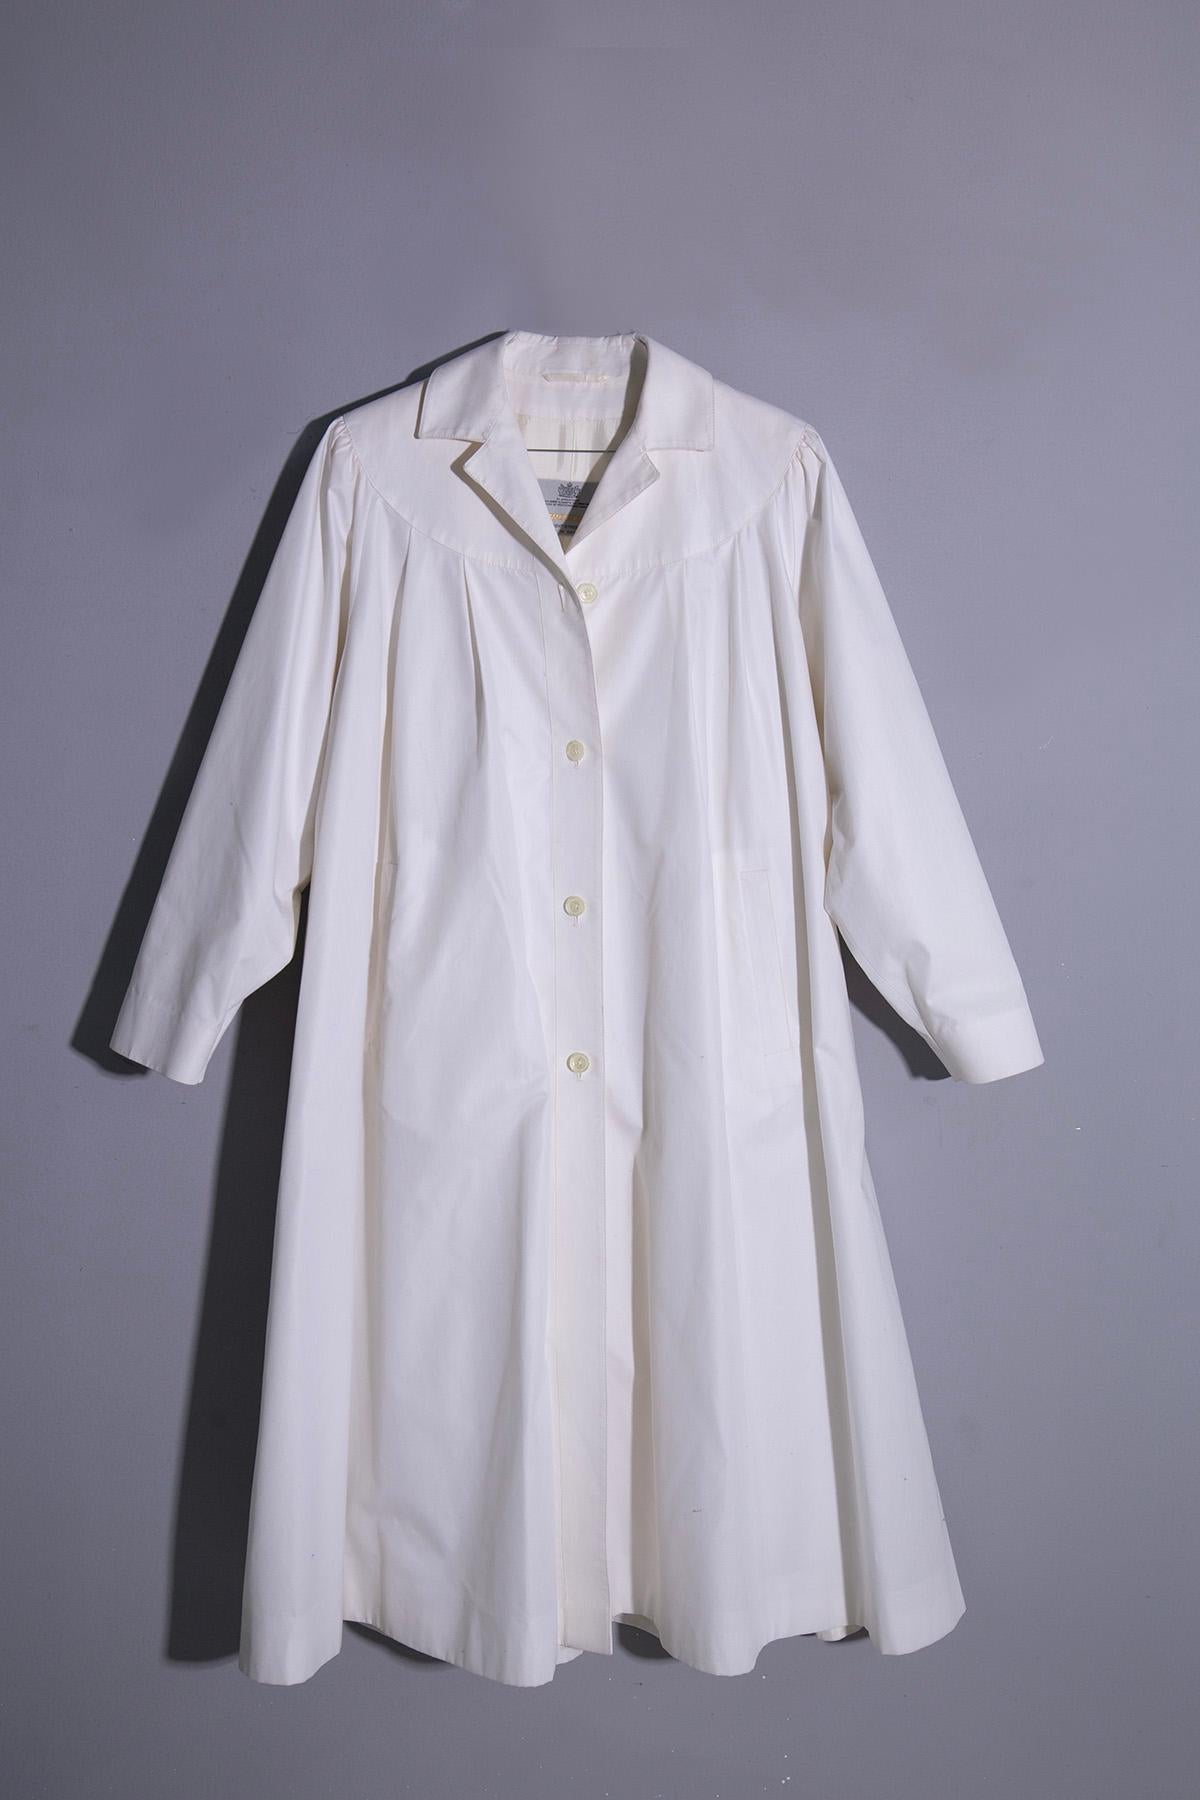 Der Damen-Regenmantel AQUASCUTUM 5 aus den 1980er bis frühen 1990er Jahren ist ein zeitloses Stück, das mühelos Stil und Funktionalität vereint. Dieser Regenmantel aus weißem Acetat strahlt Raffinesse und Eleganz aus und bietet gleichzeitig Schutz